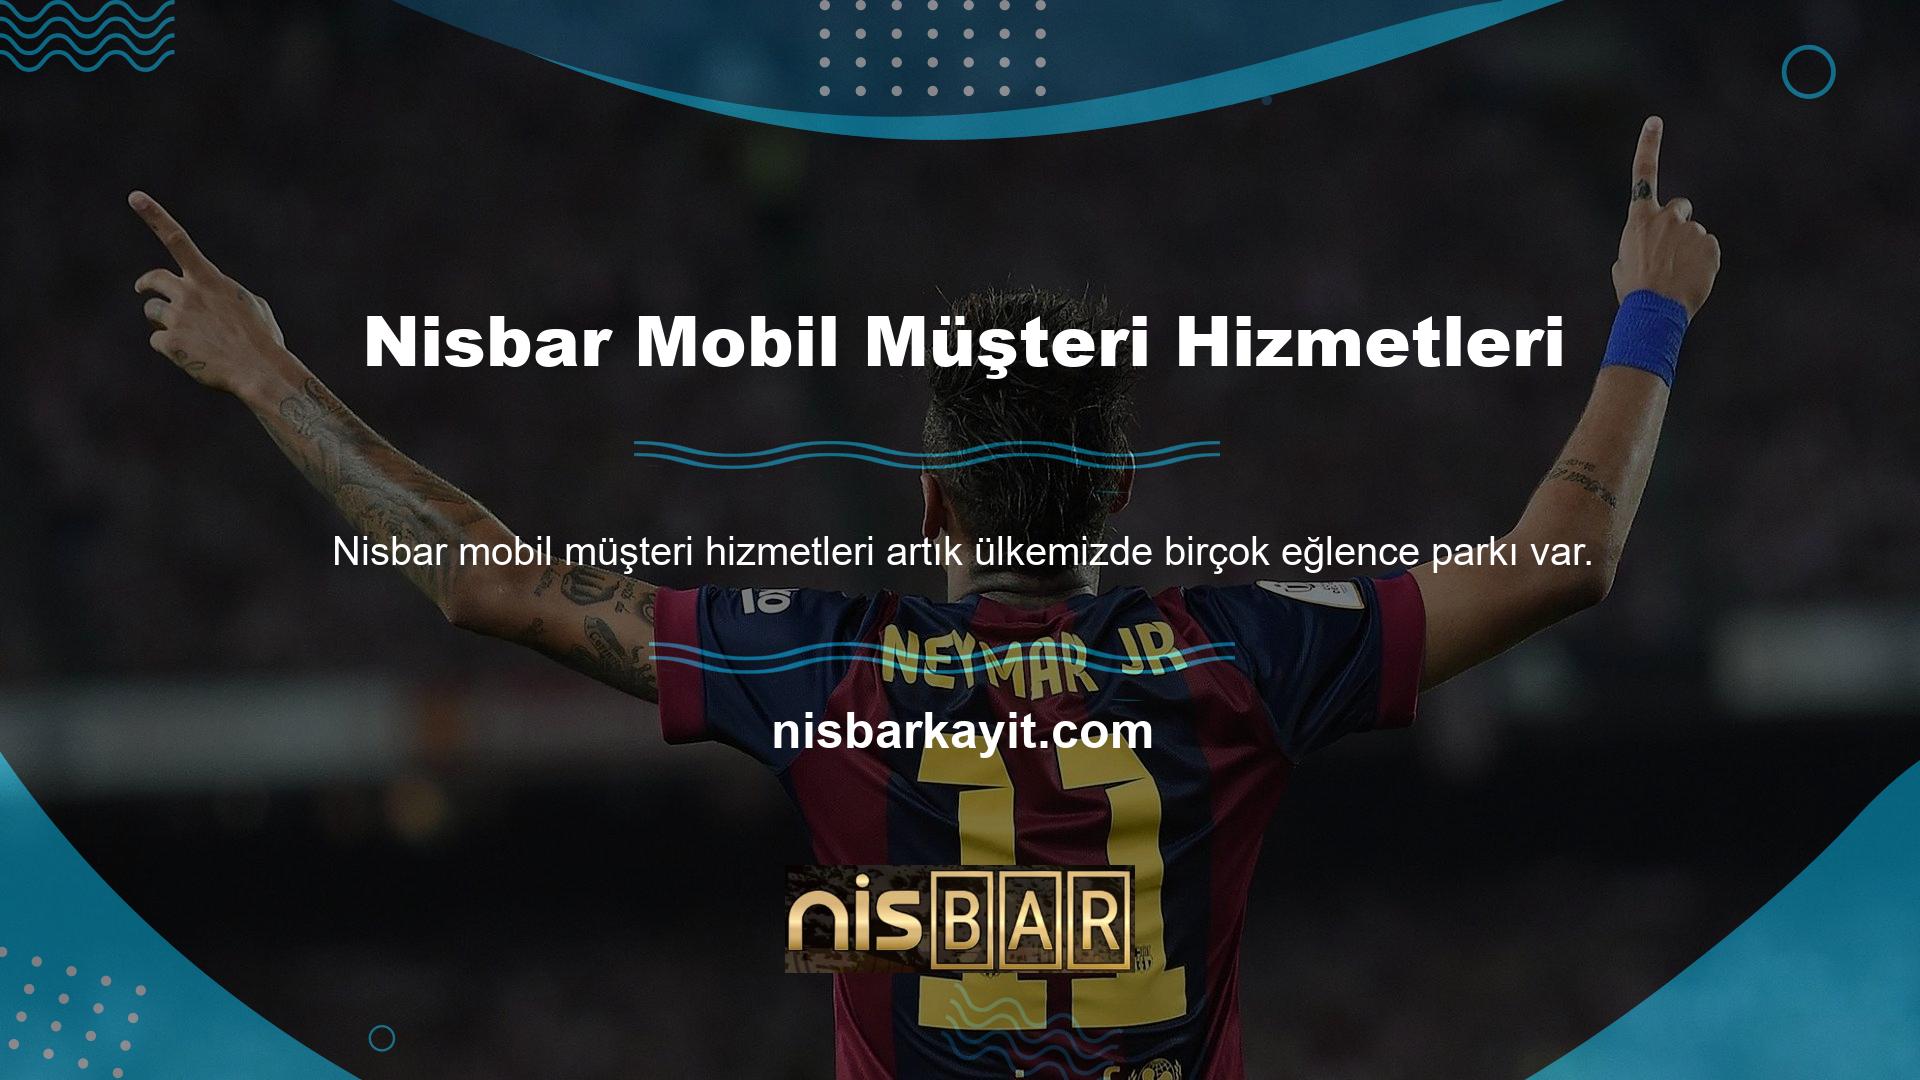 Ancak bunların arasında bile Nisbar web sitesi her yönüyle öne çıkıyor